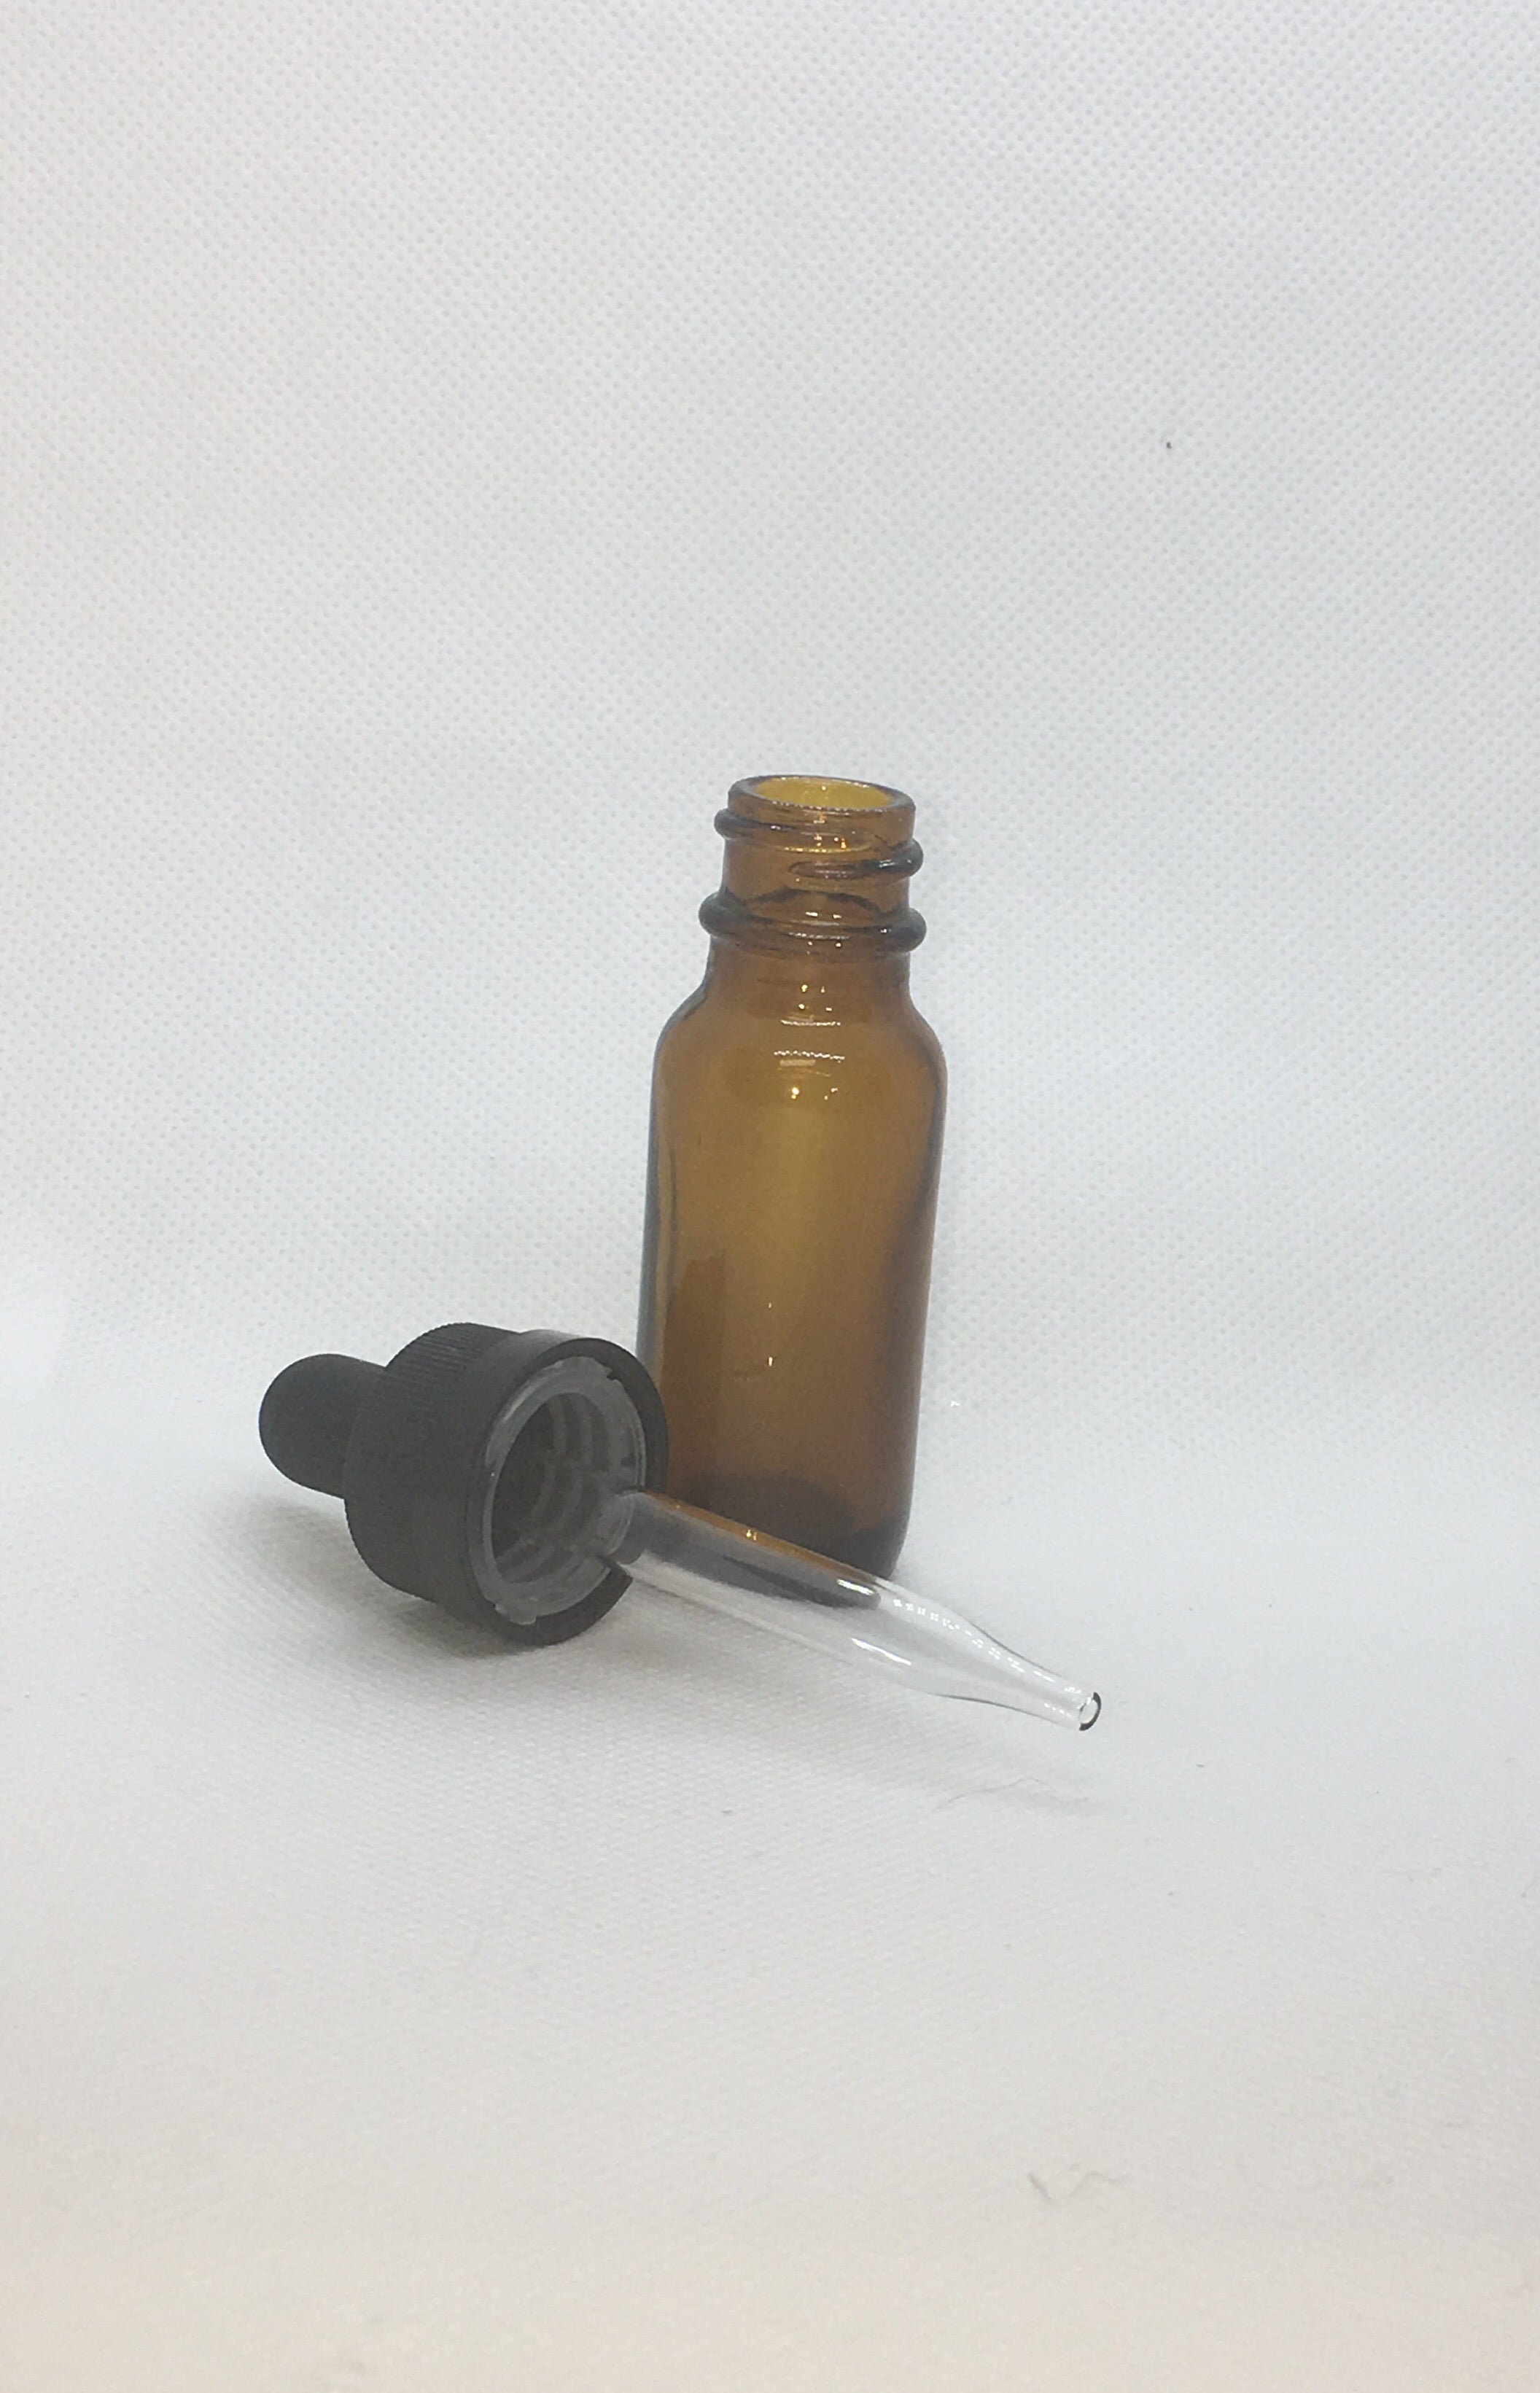 Lavender Essential Oil 100% Therapeutic Grade